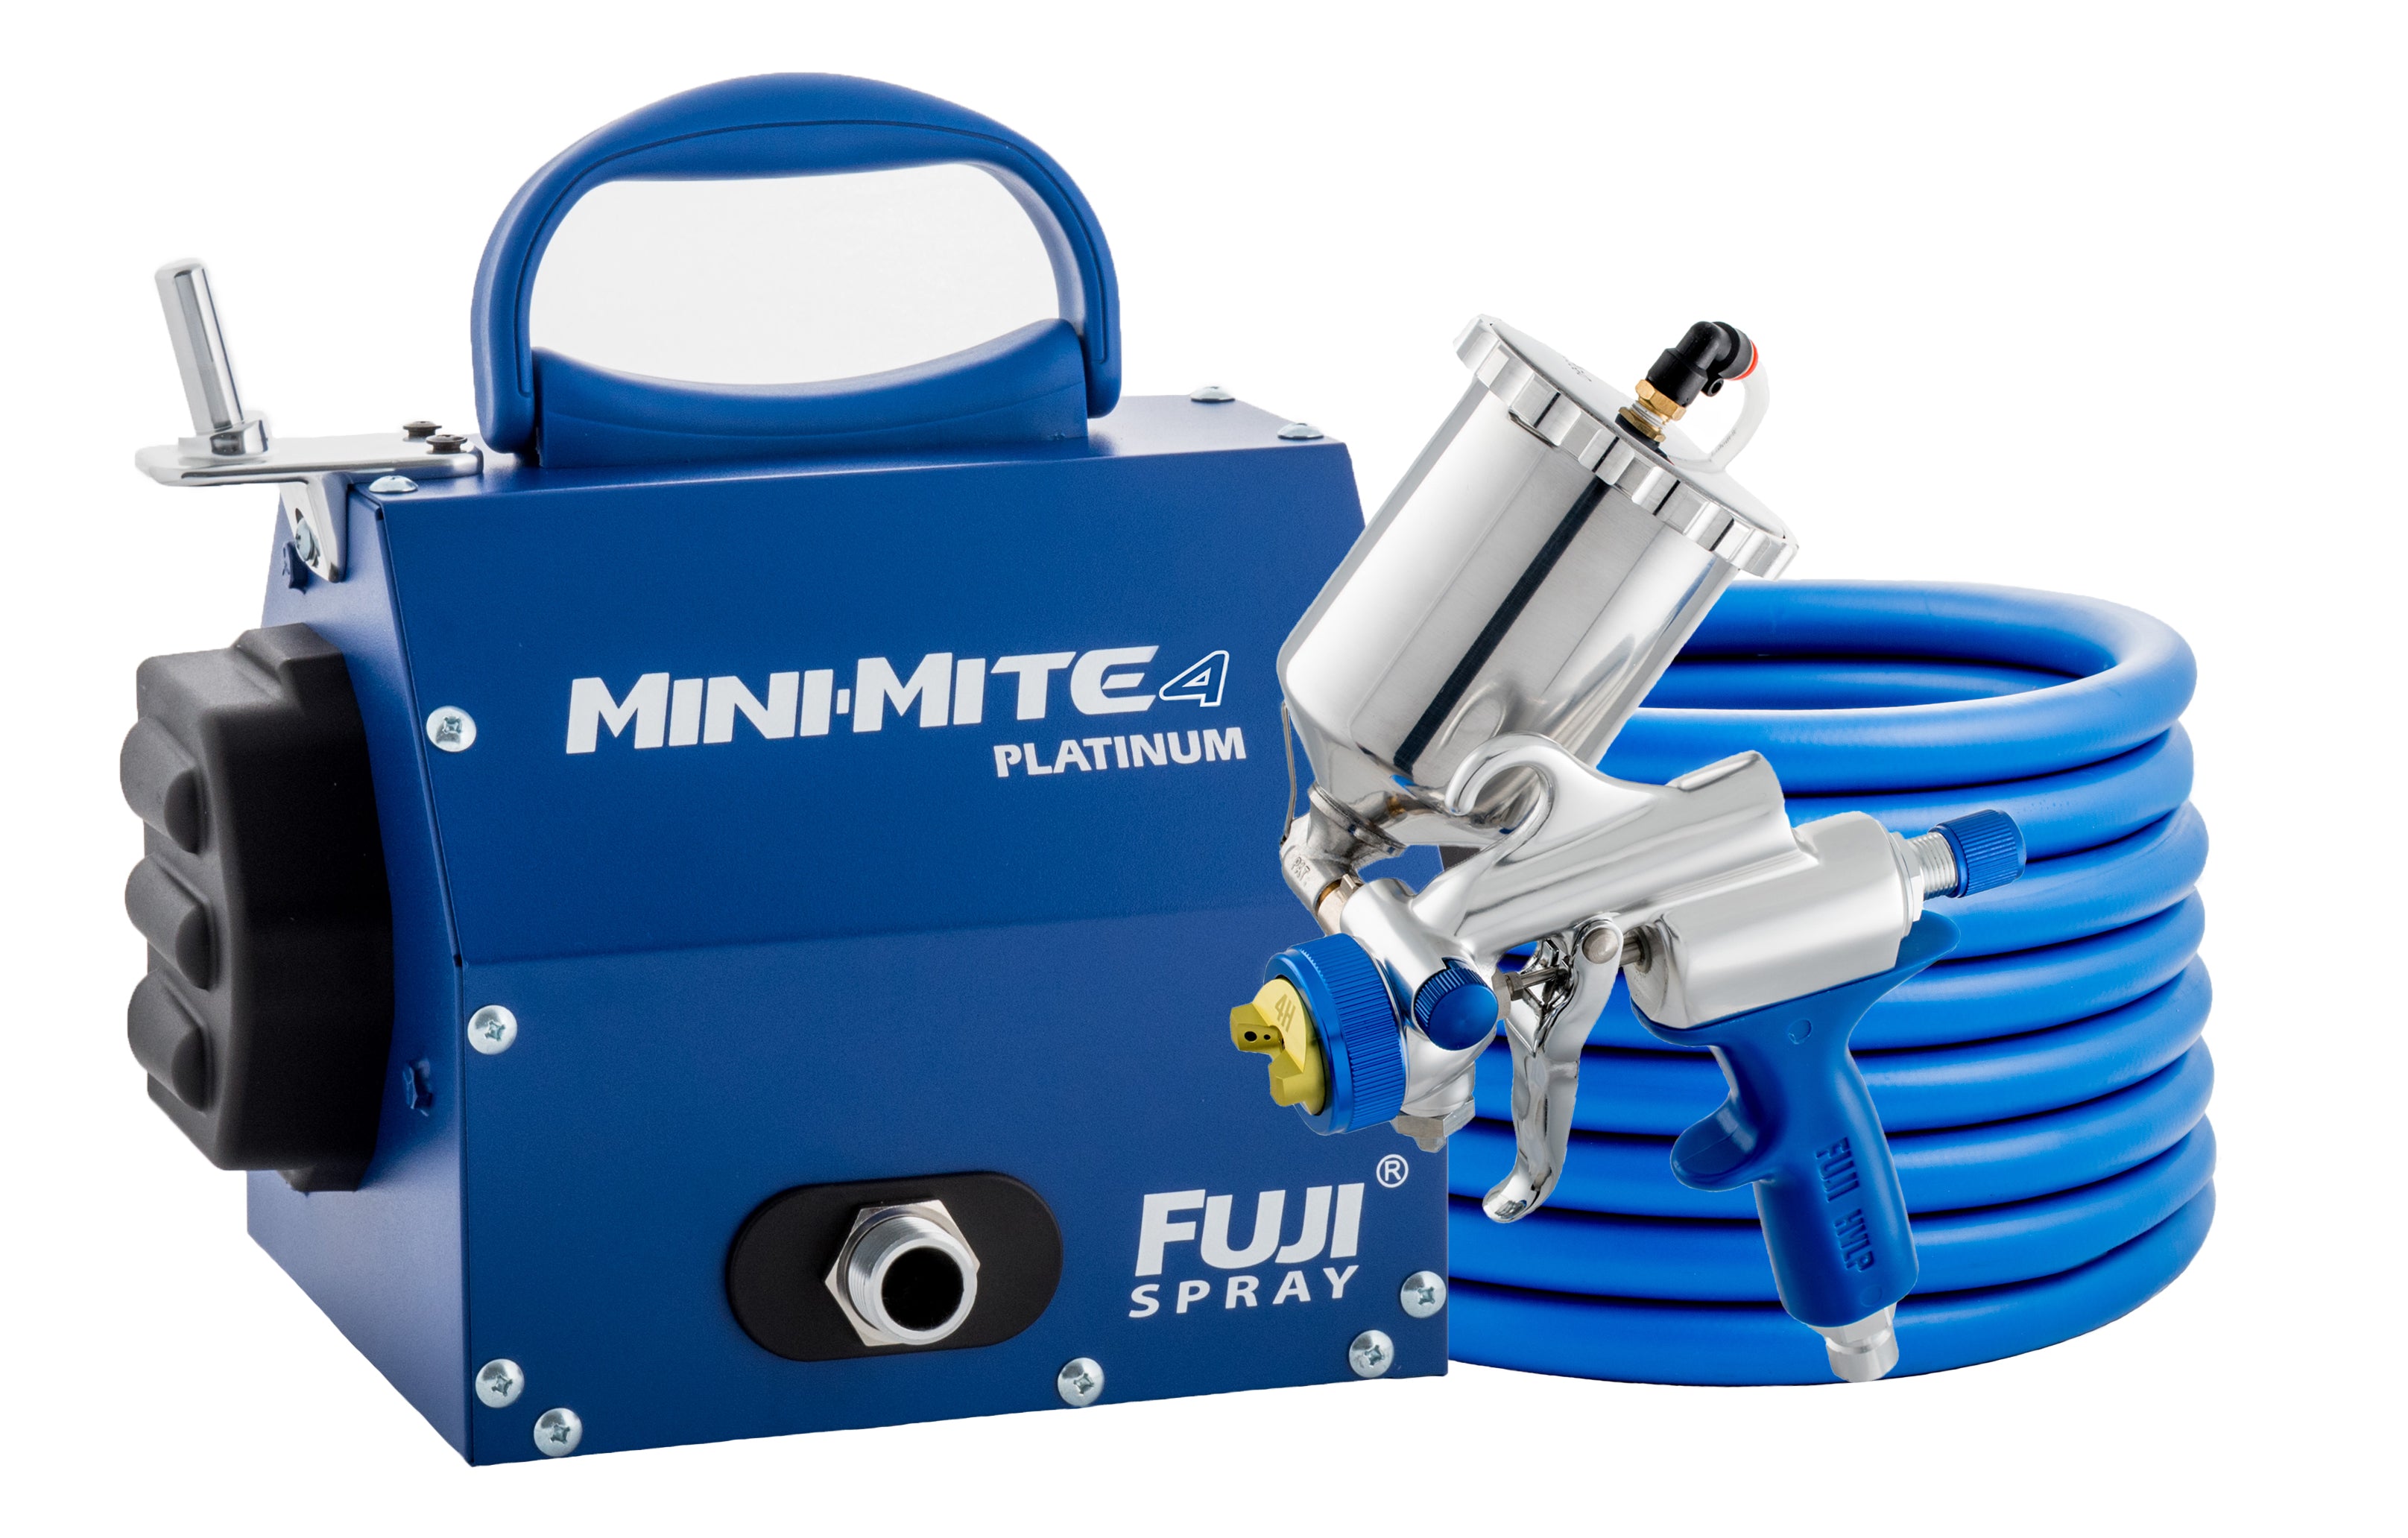 Fuji Spray Mini-Mite Platinum™ Turbine System with Spray Gun, Hose, and Turbine